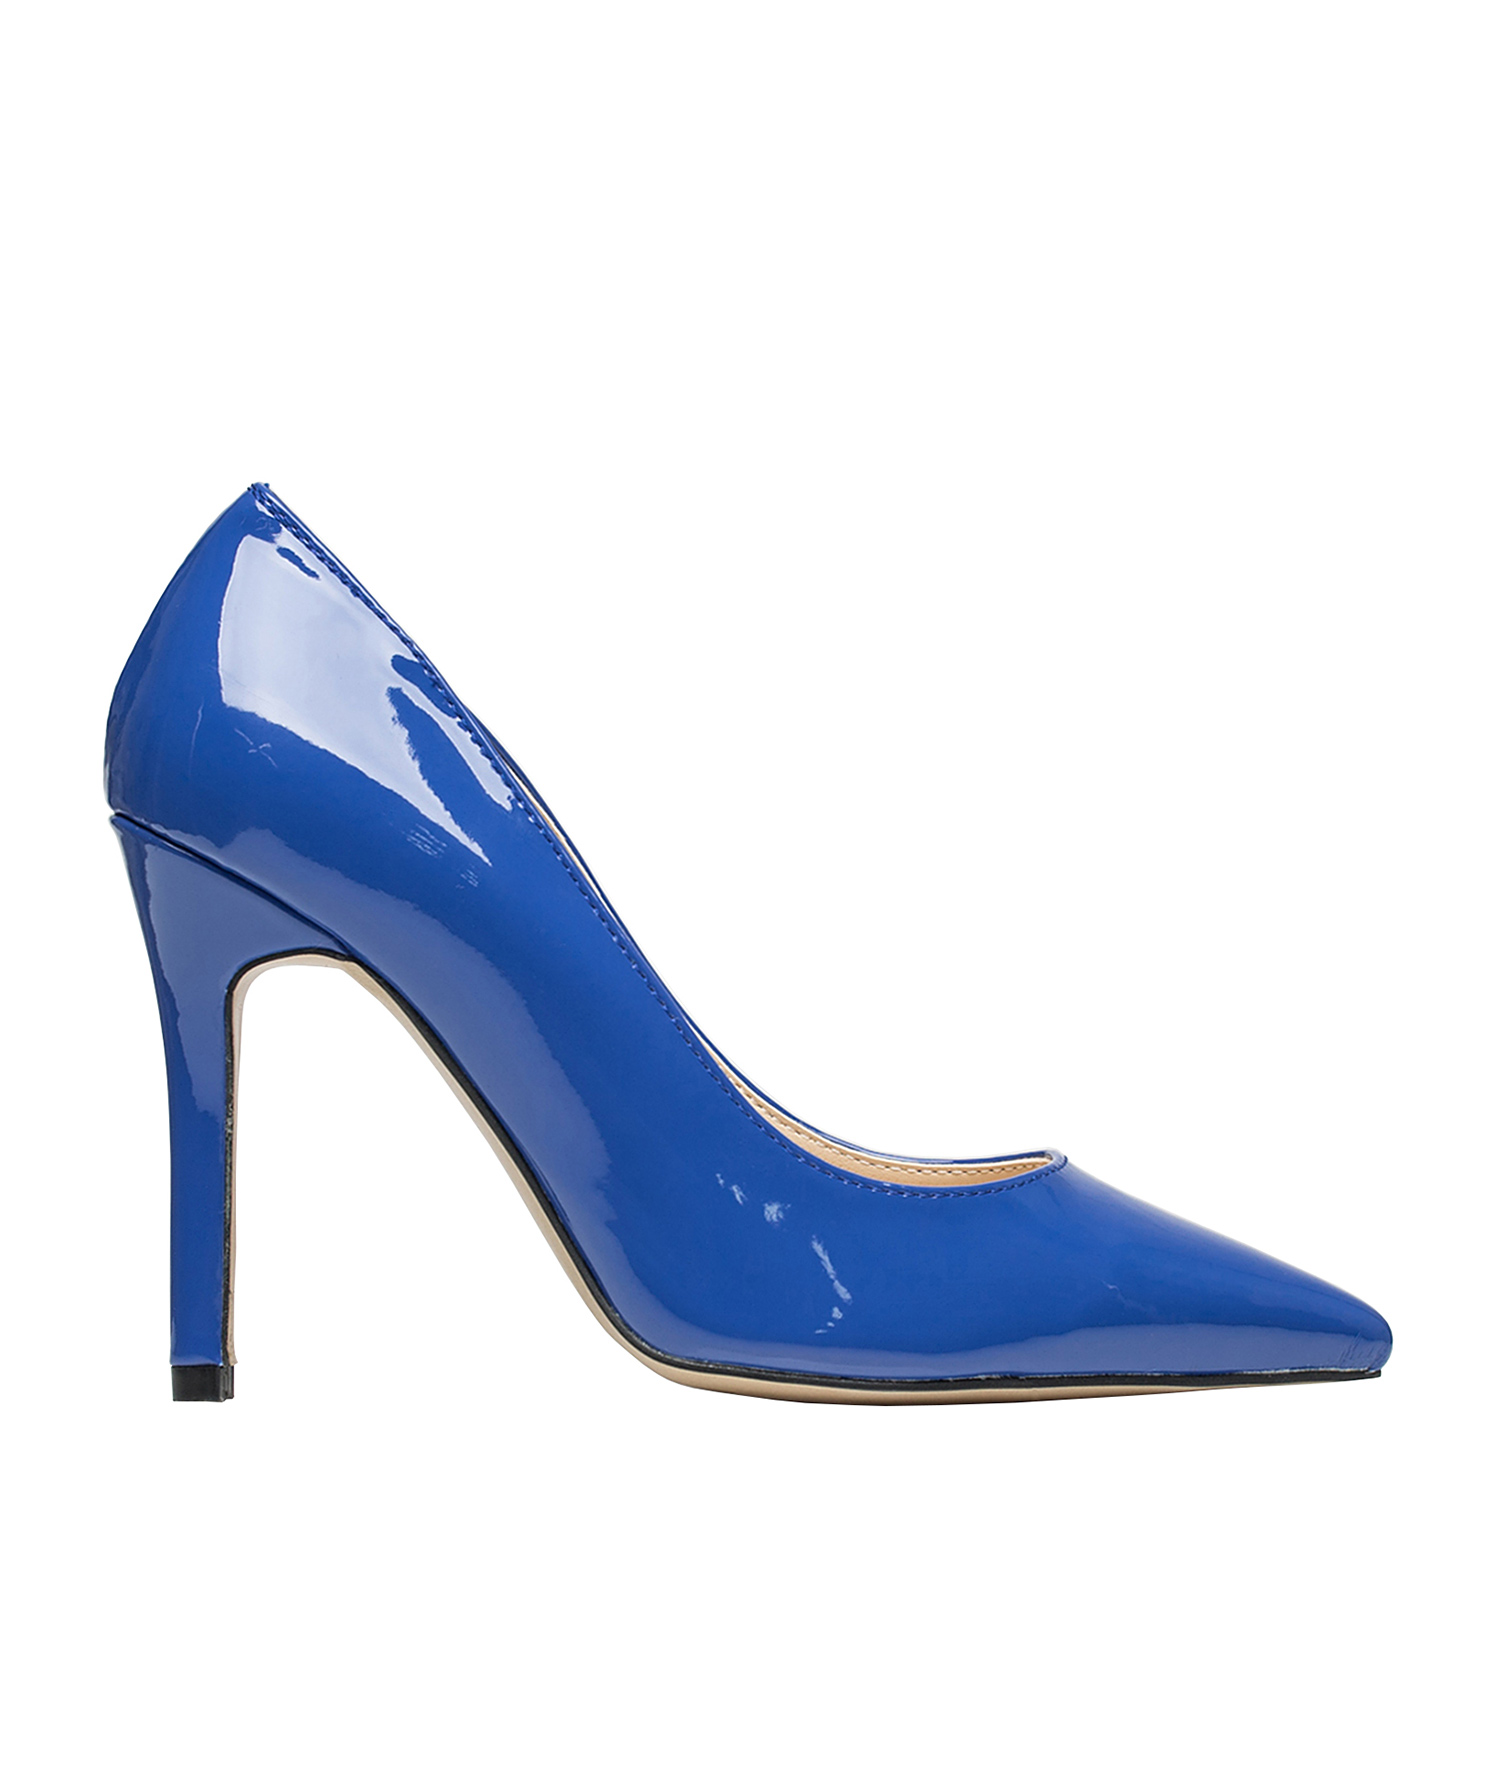 blue high heel pumps